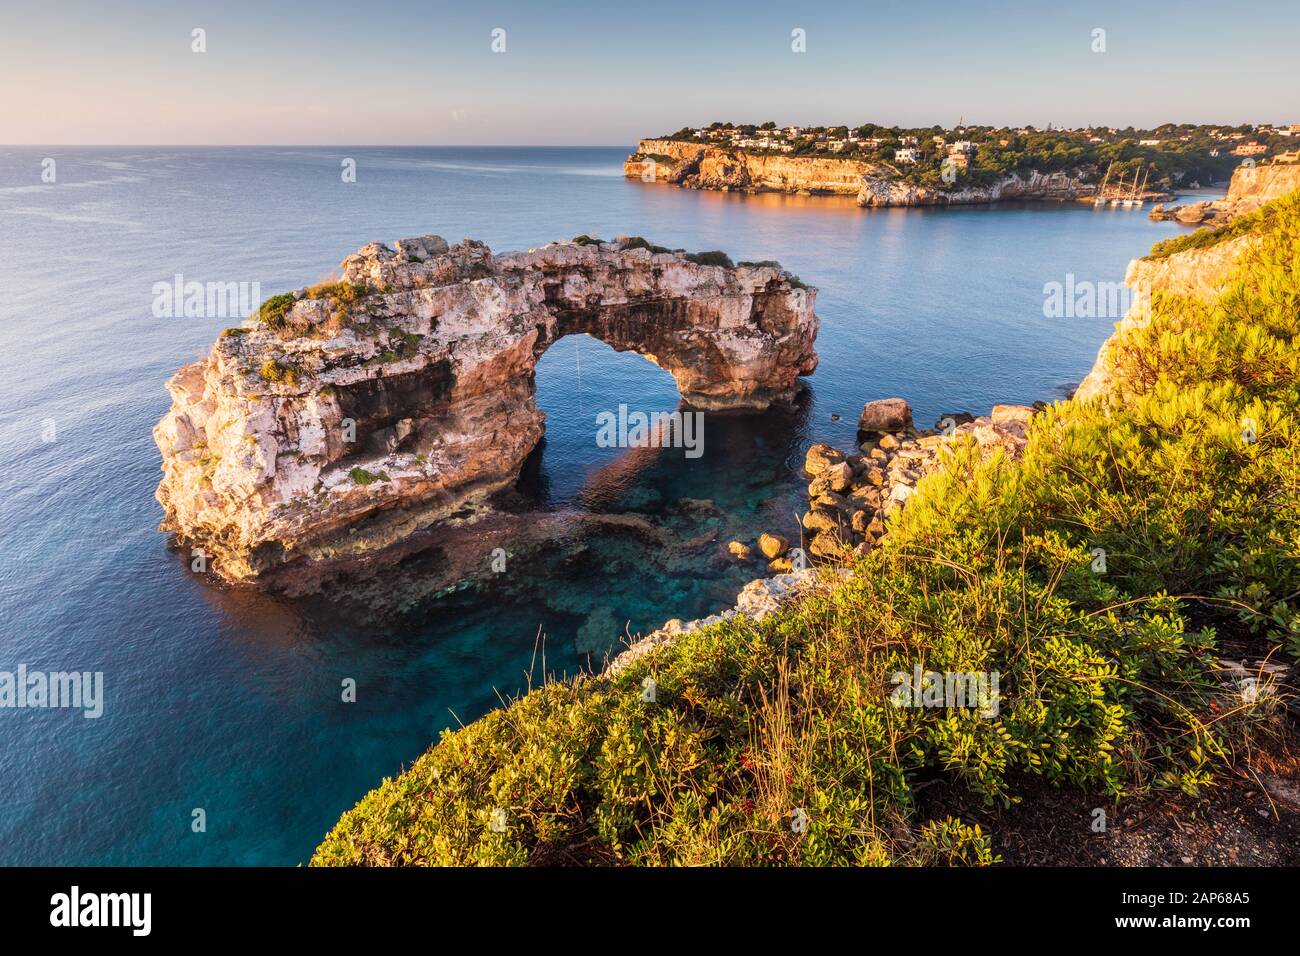 Es Pontas arche naturelle à Majorque, baie de Cala Llombards visible sur la droite Banque D'Images